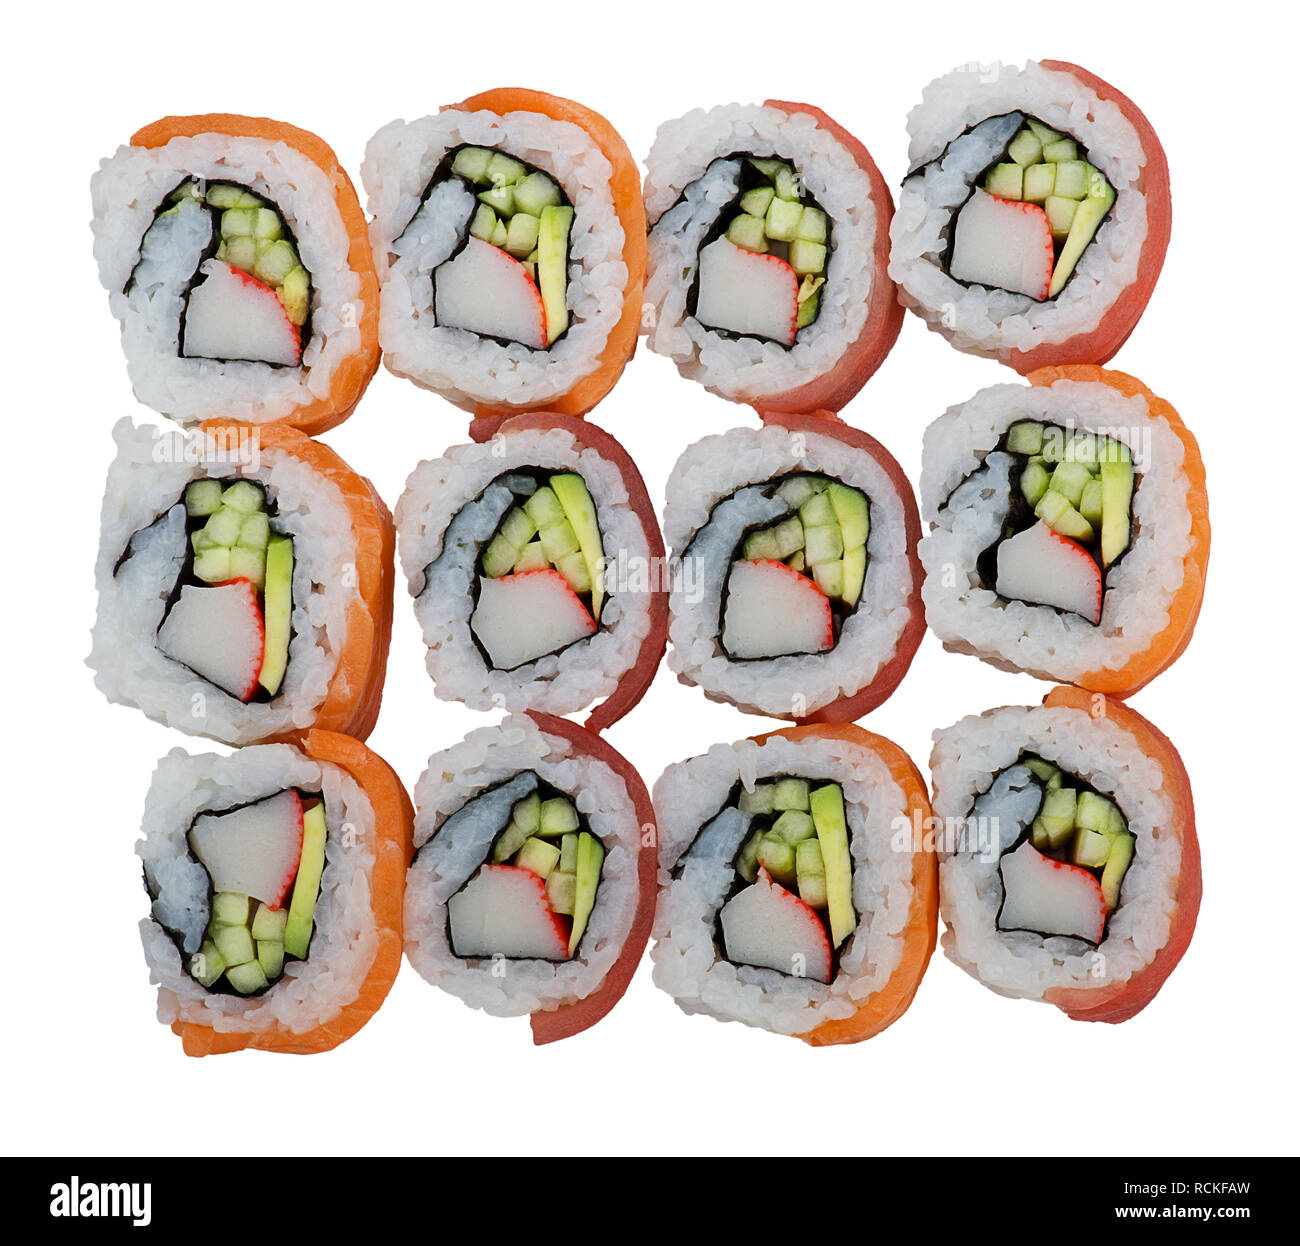 Rotoli di Sushi con salmone e tonno isolati su sfondo bianco Foto Stock